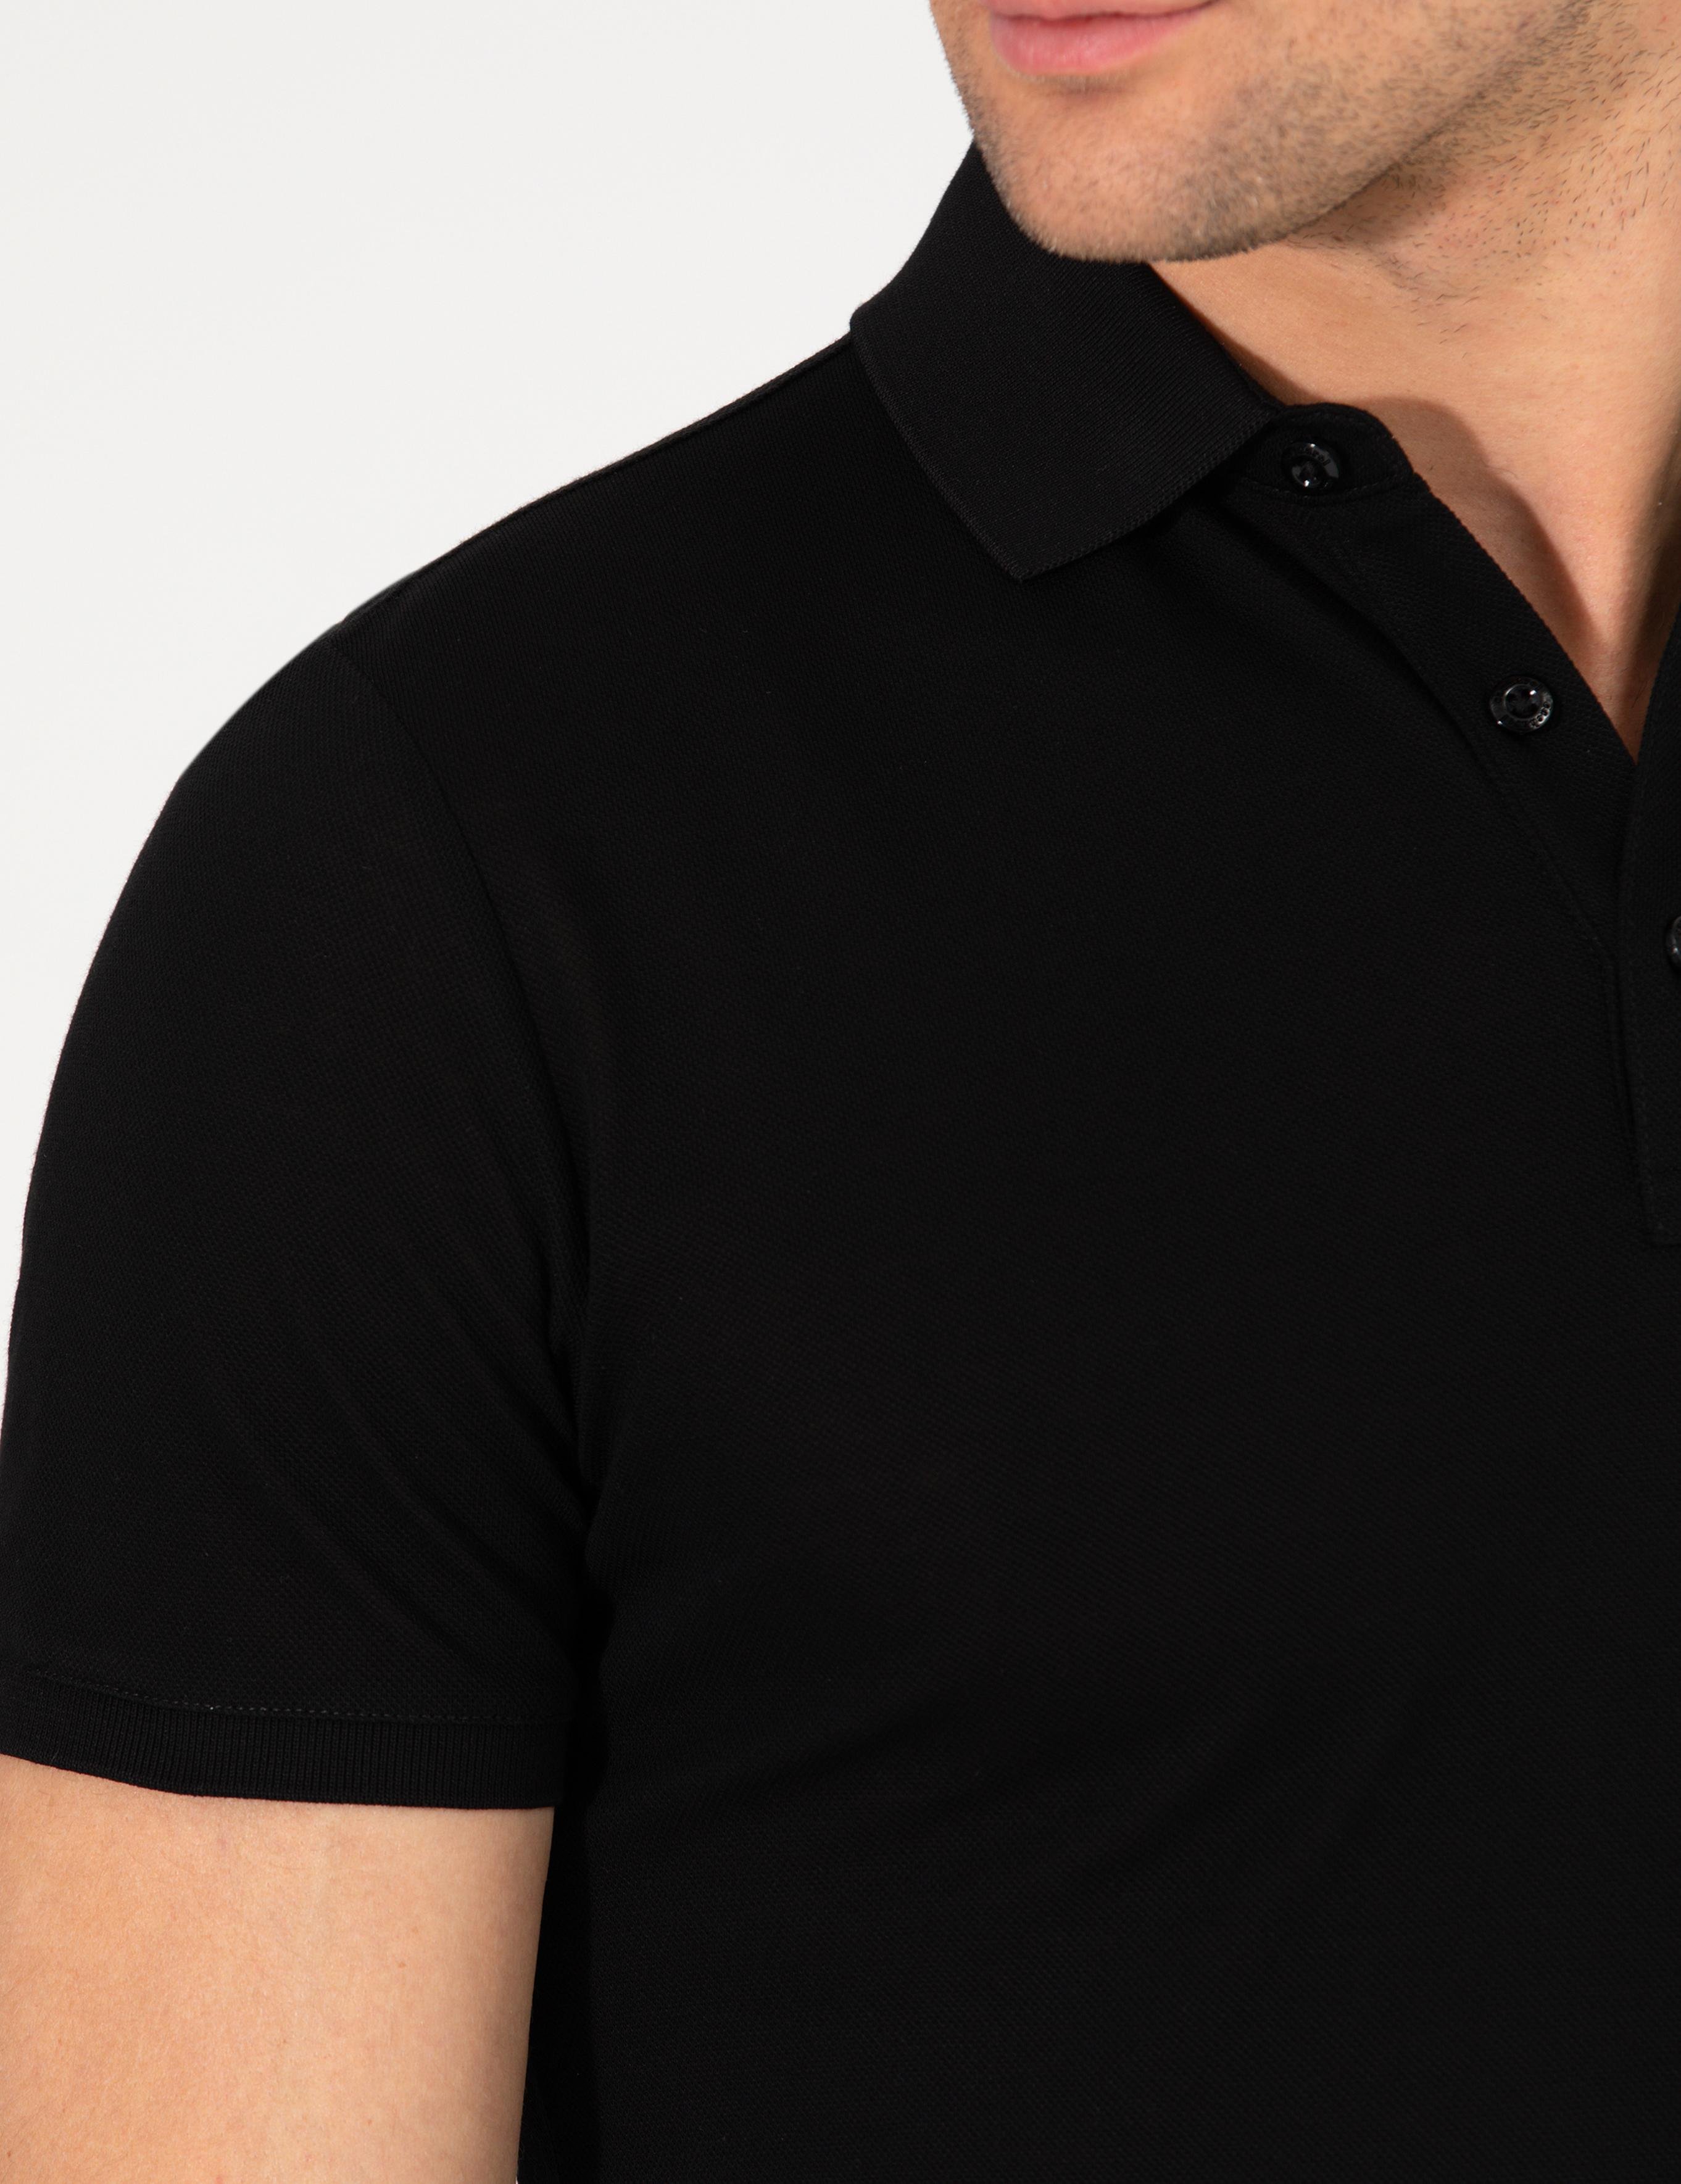 Siyah Polo Yaka Slim Fit Basic T-Shirt - 50265364026